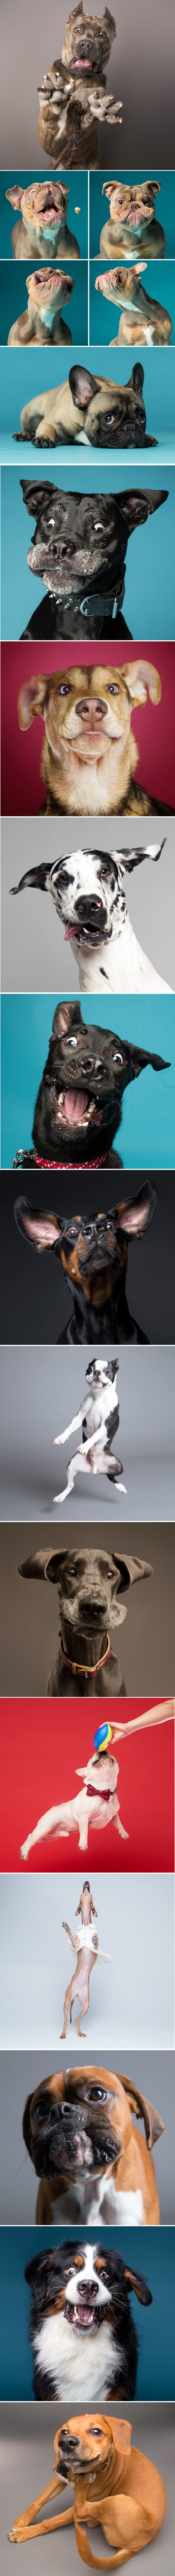 Ovaj čovjek fotografira pse s pomalo luckastim izrazima lica